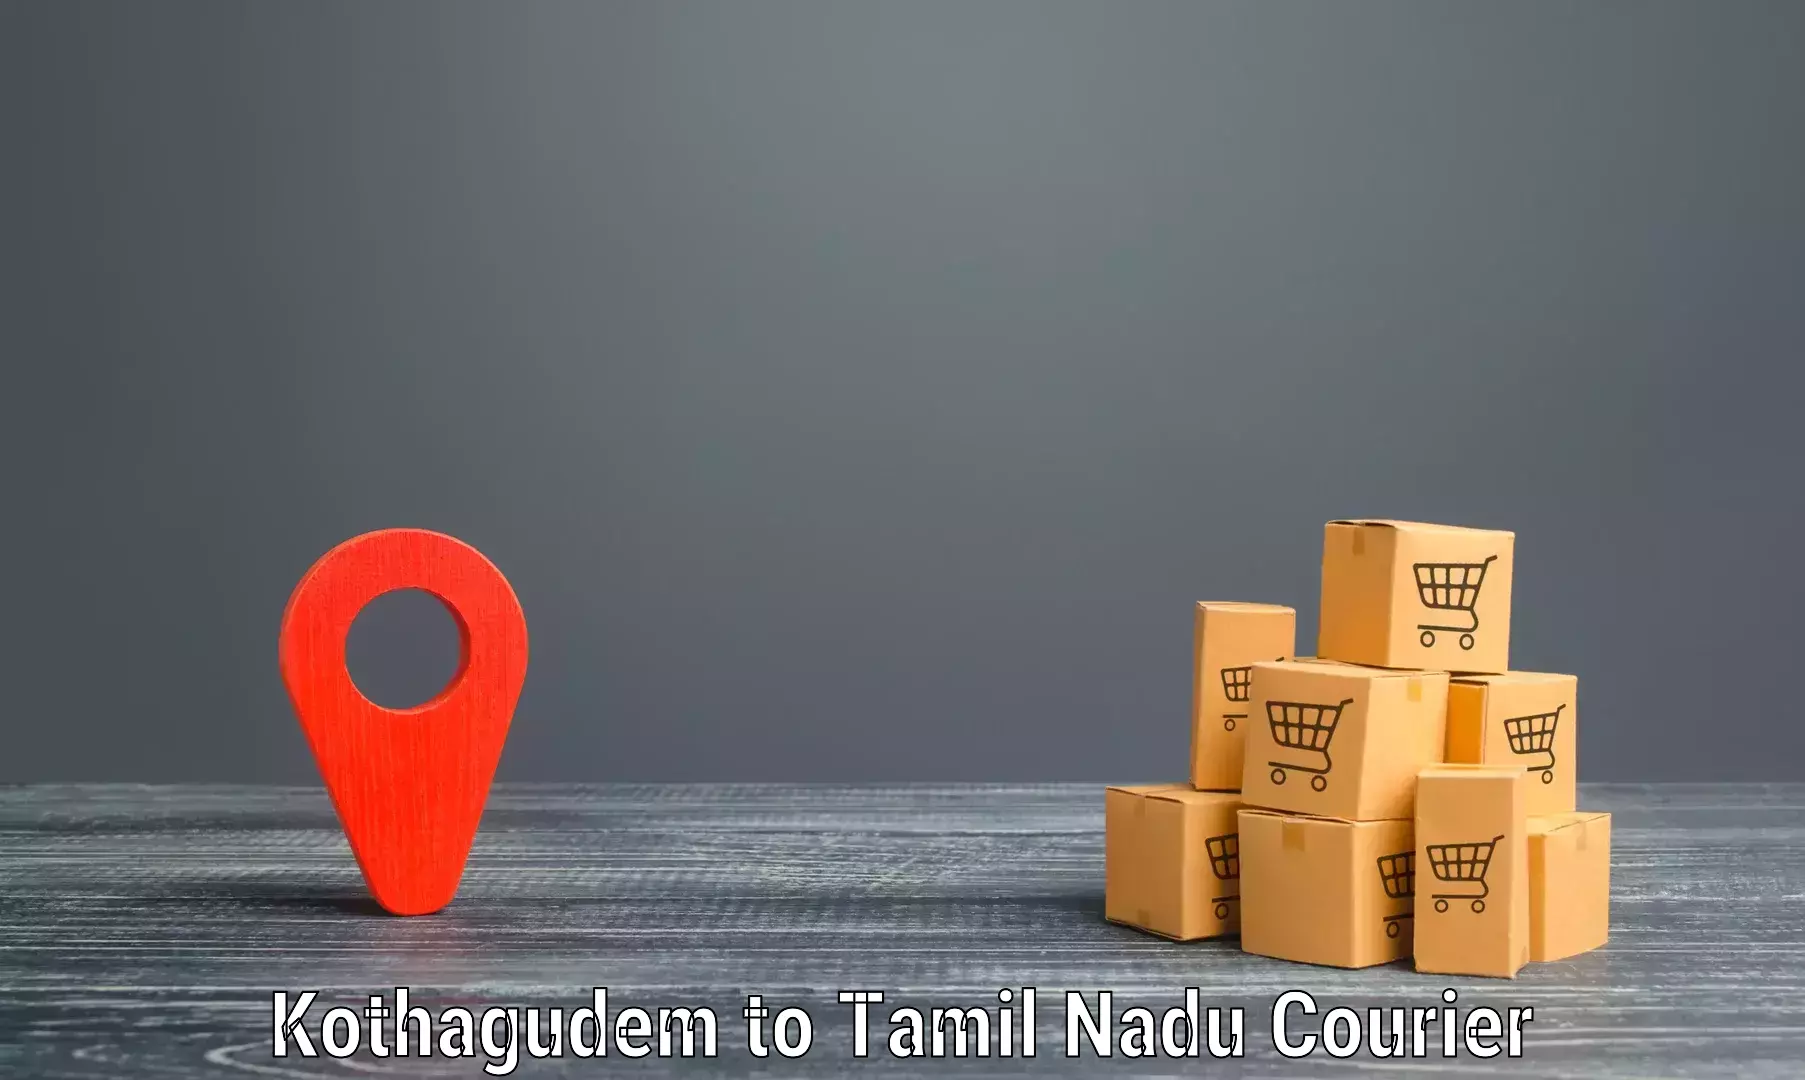 Custom courier rates Kothagudem to Kodaikanal